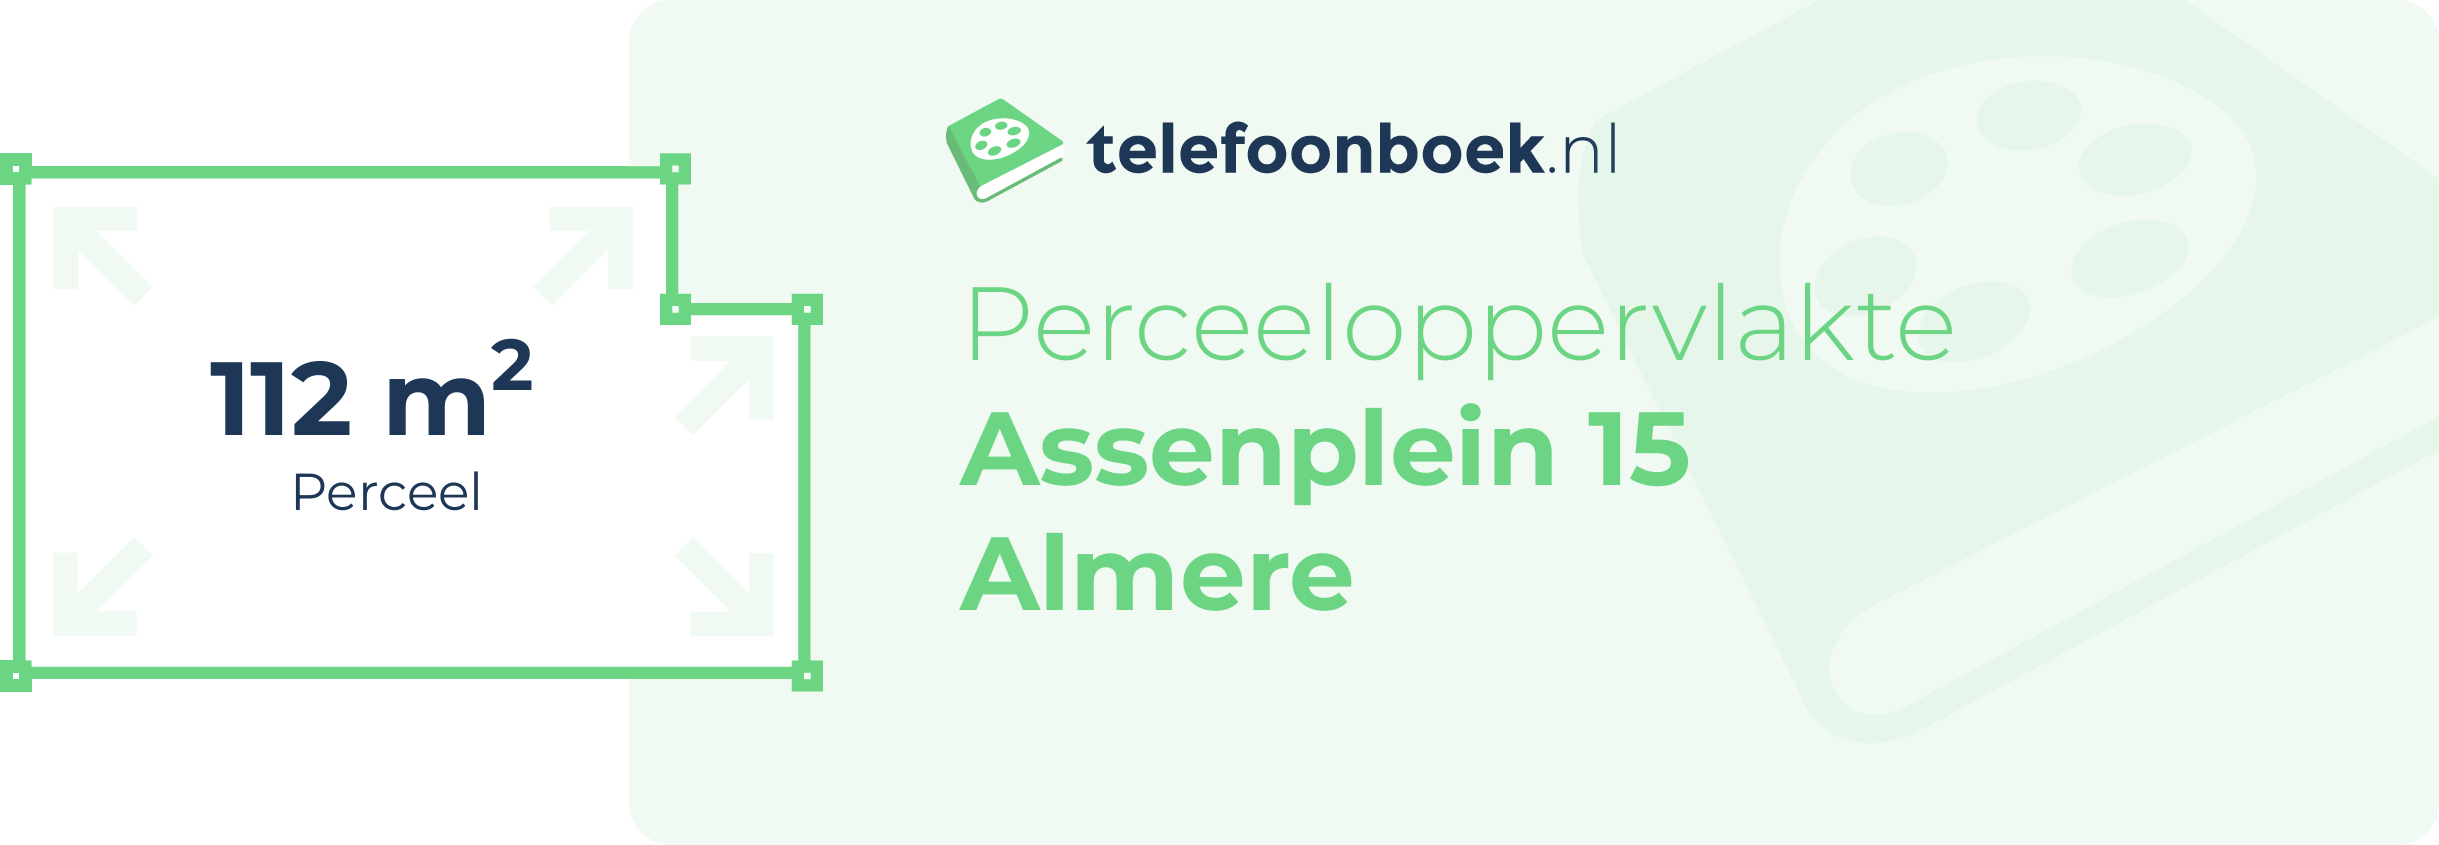 Perceeloppervlakte Assenplein 15 Almere